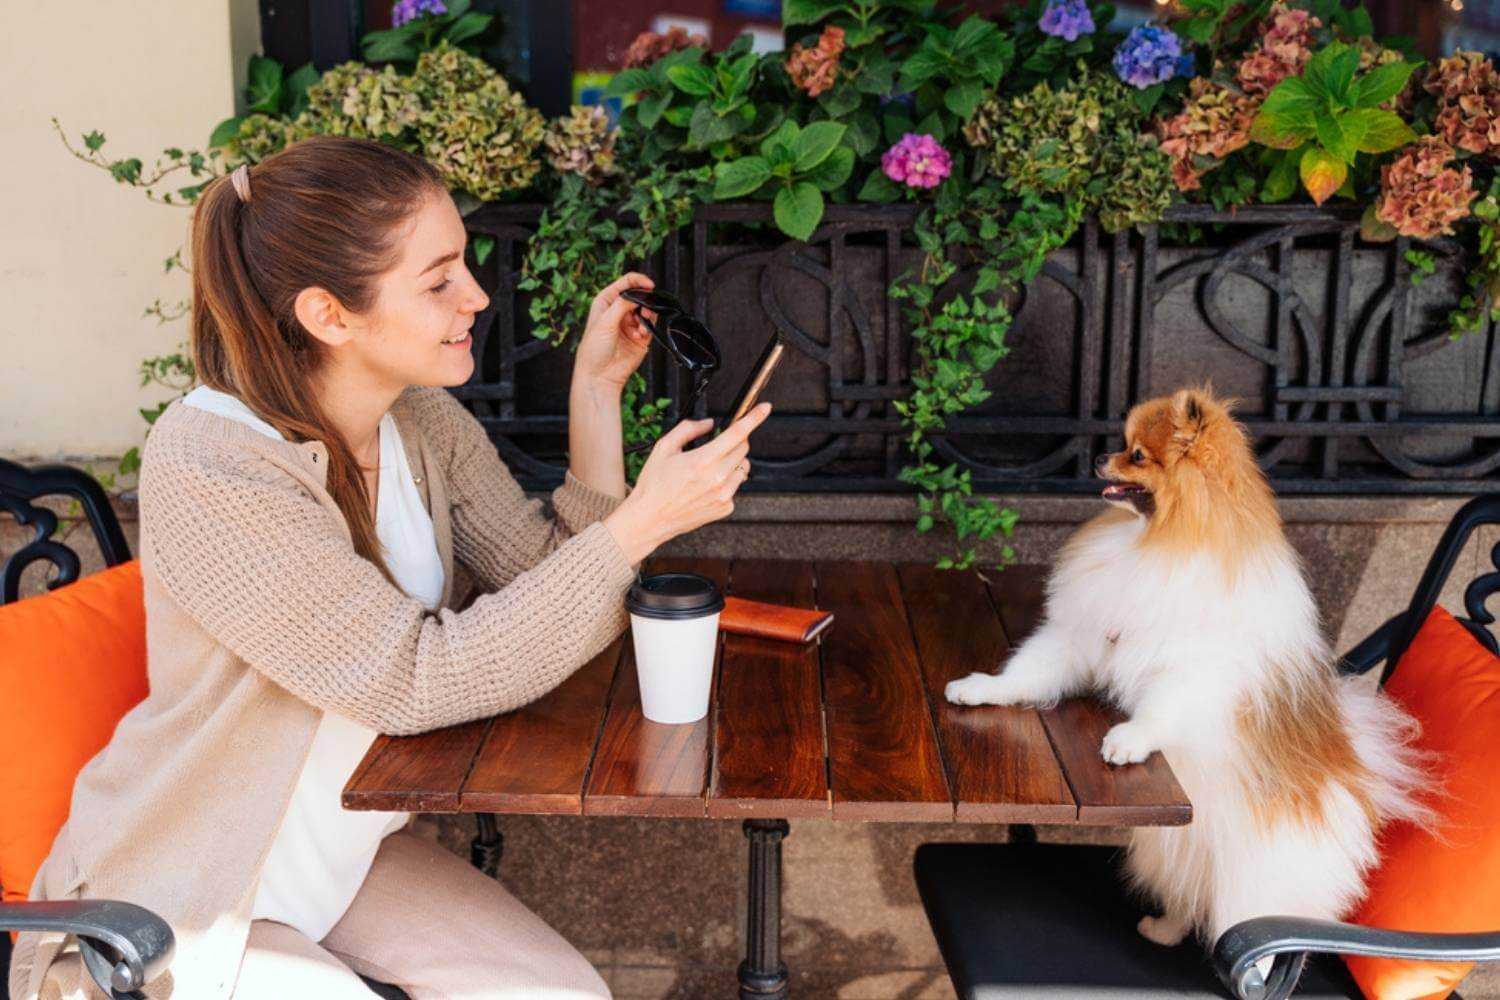 Tallahassee Dog and Woman at Table